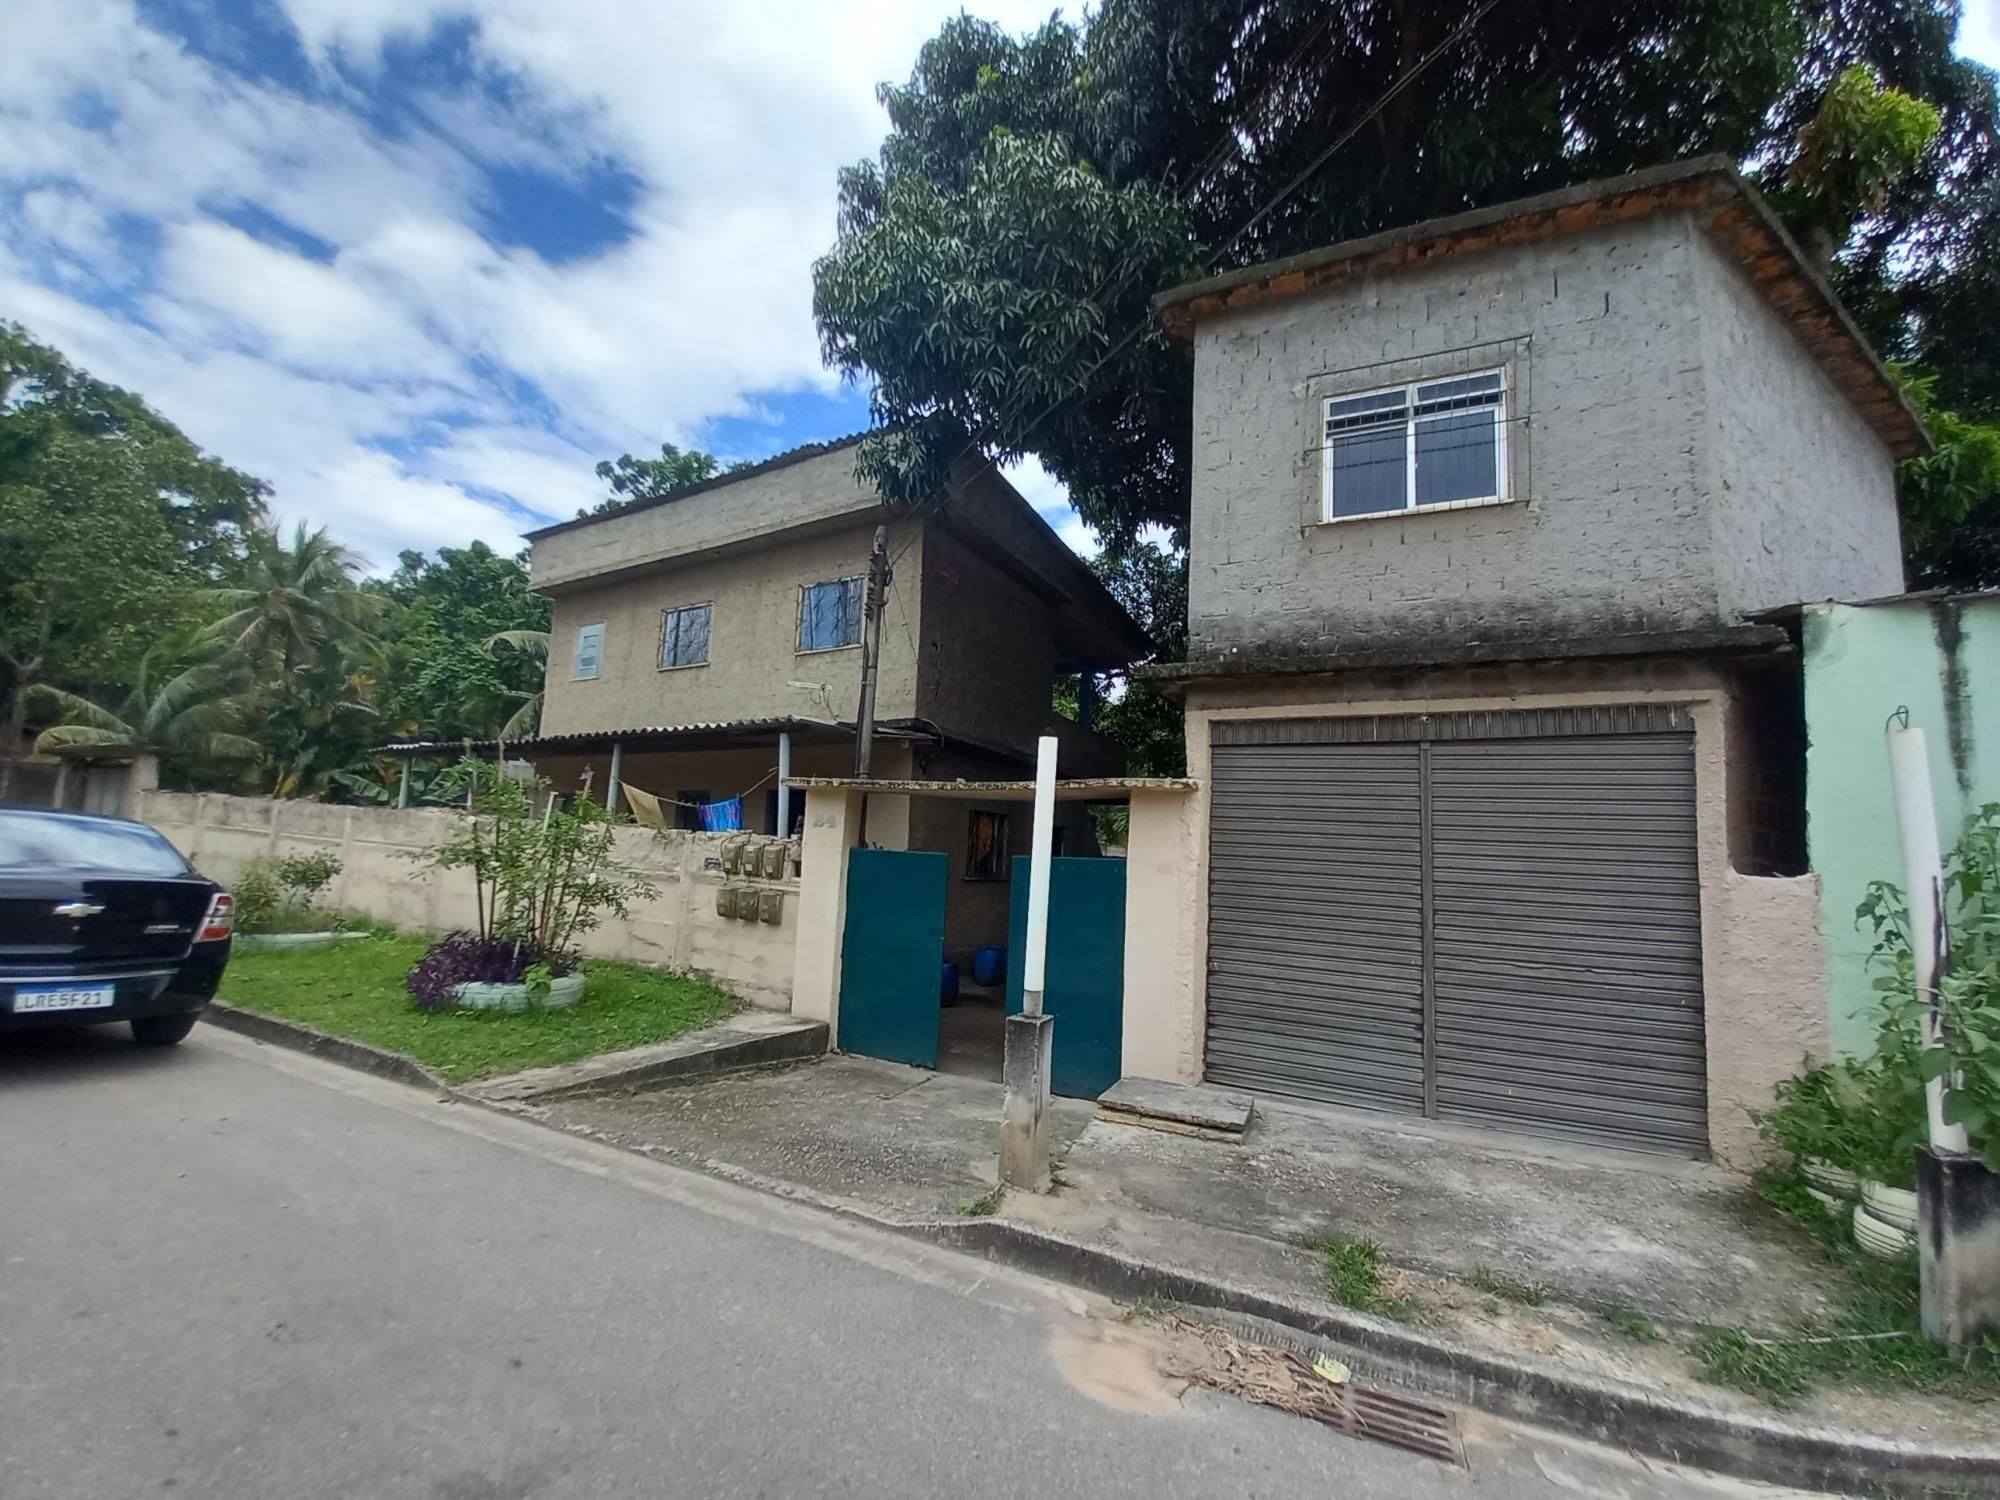 Casa  venda  no Fonseca - Duque de Caxias, RJ. Imveis